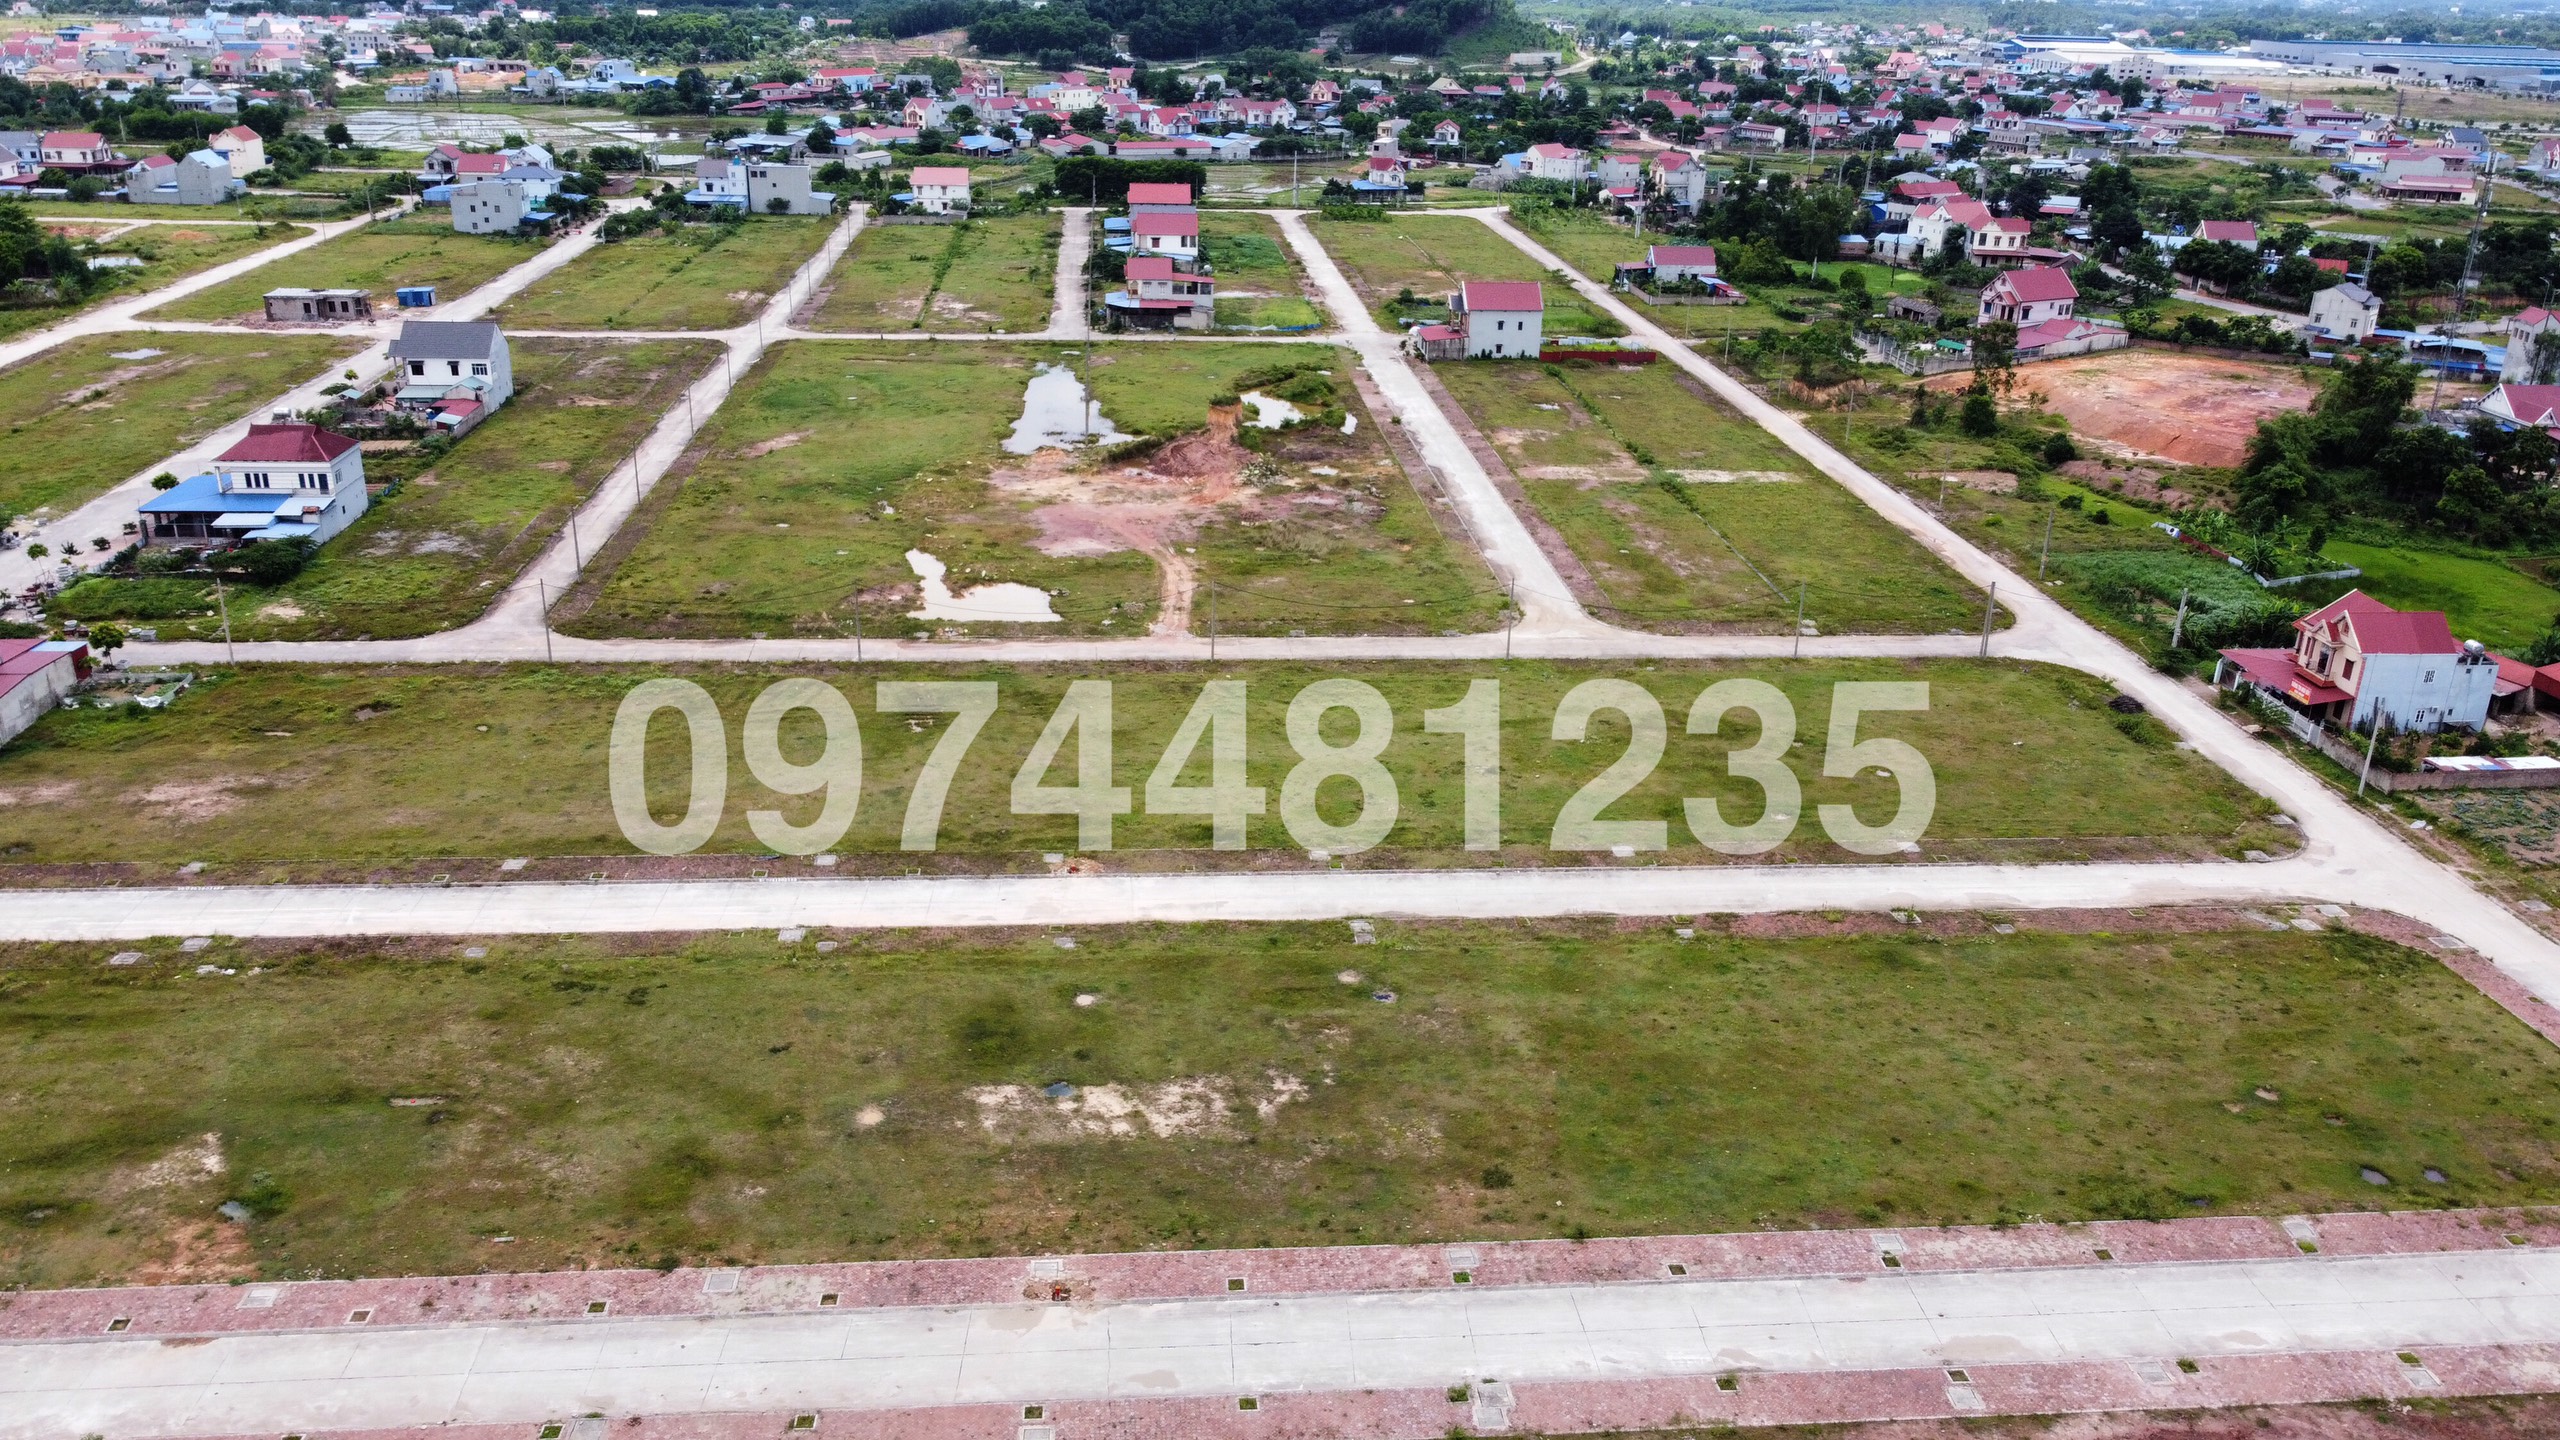 Bán DOM 22 - 08 đất đấu giá Khu dân cư xã Hồng Tiến thị xã Phổ Yên tỉnh Thái Nguyên.